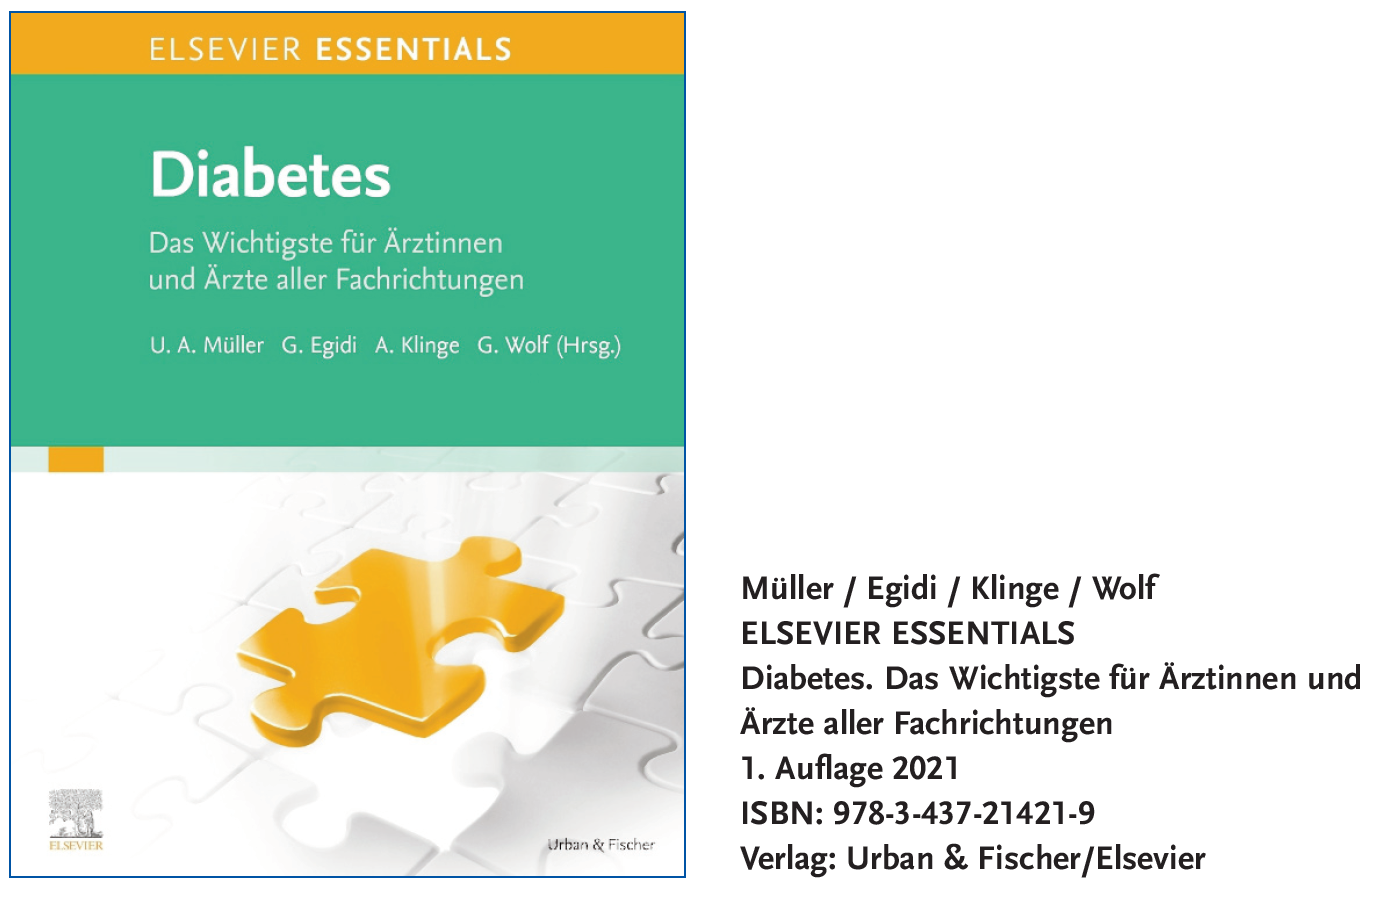 Abbildung 1: Müller / Egidi / Klinge / Wolf, ELSEVIER ESSENTIALS, Diabetes. Das Wichtigste für Ärztinnen und Ärzte aller Fachrichtungen, 1. Auflage 2021